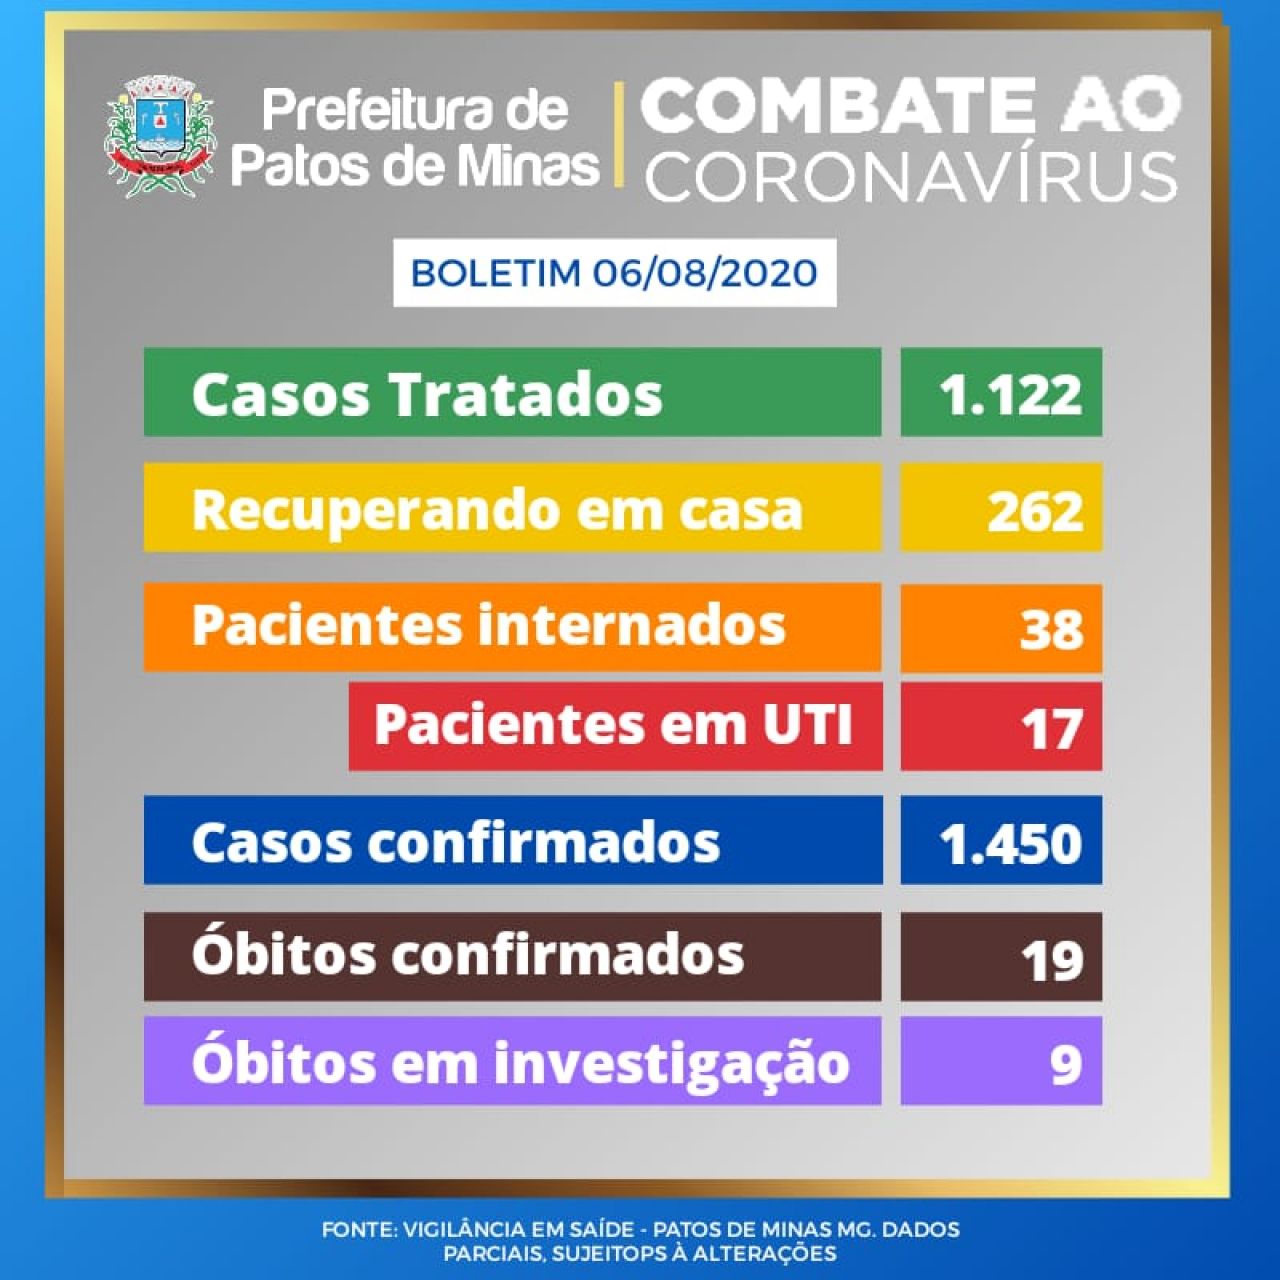 Covid-19: Patos de Minas registra 2 mortes confirmadas e 16 novos casos nas últimas 24 horas